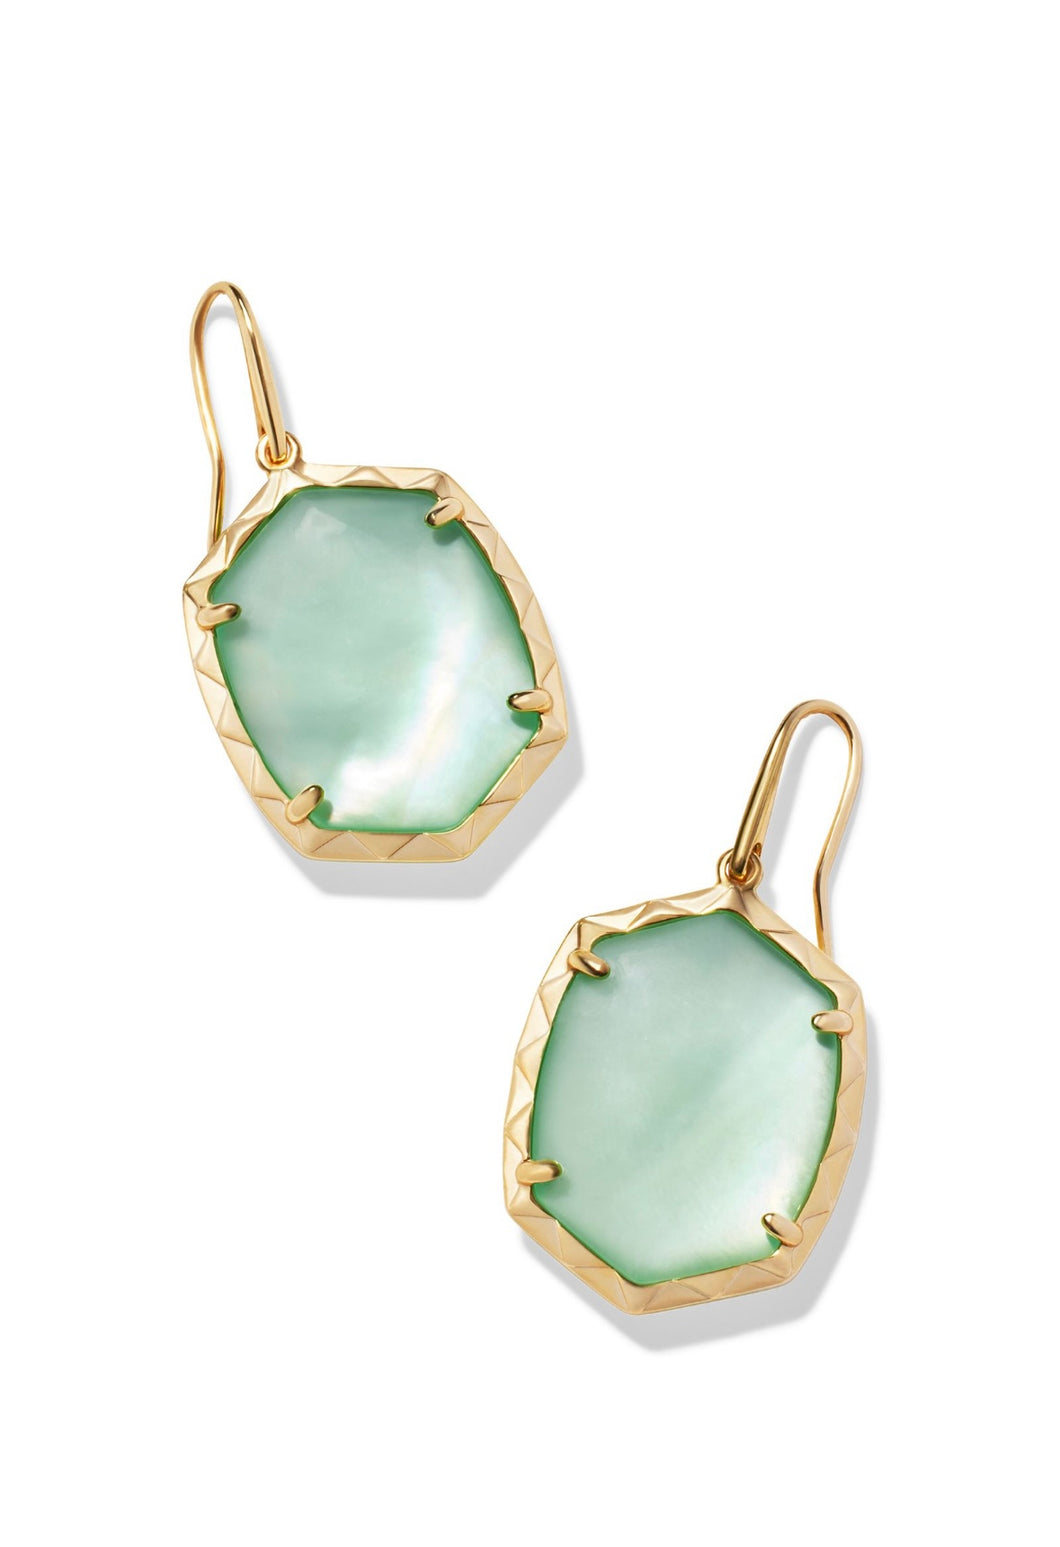 Kendra Scott: Daphne Drop Earrings in Gold Light Green MOP